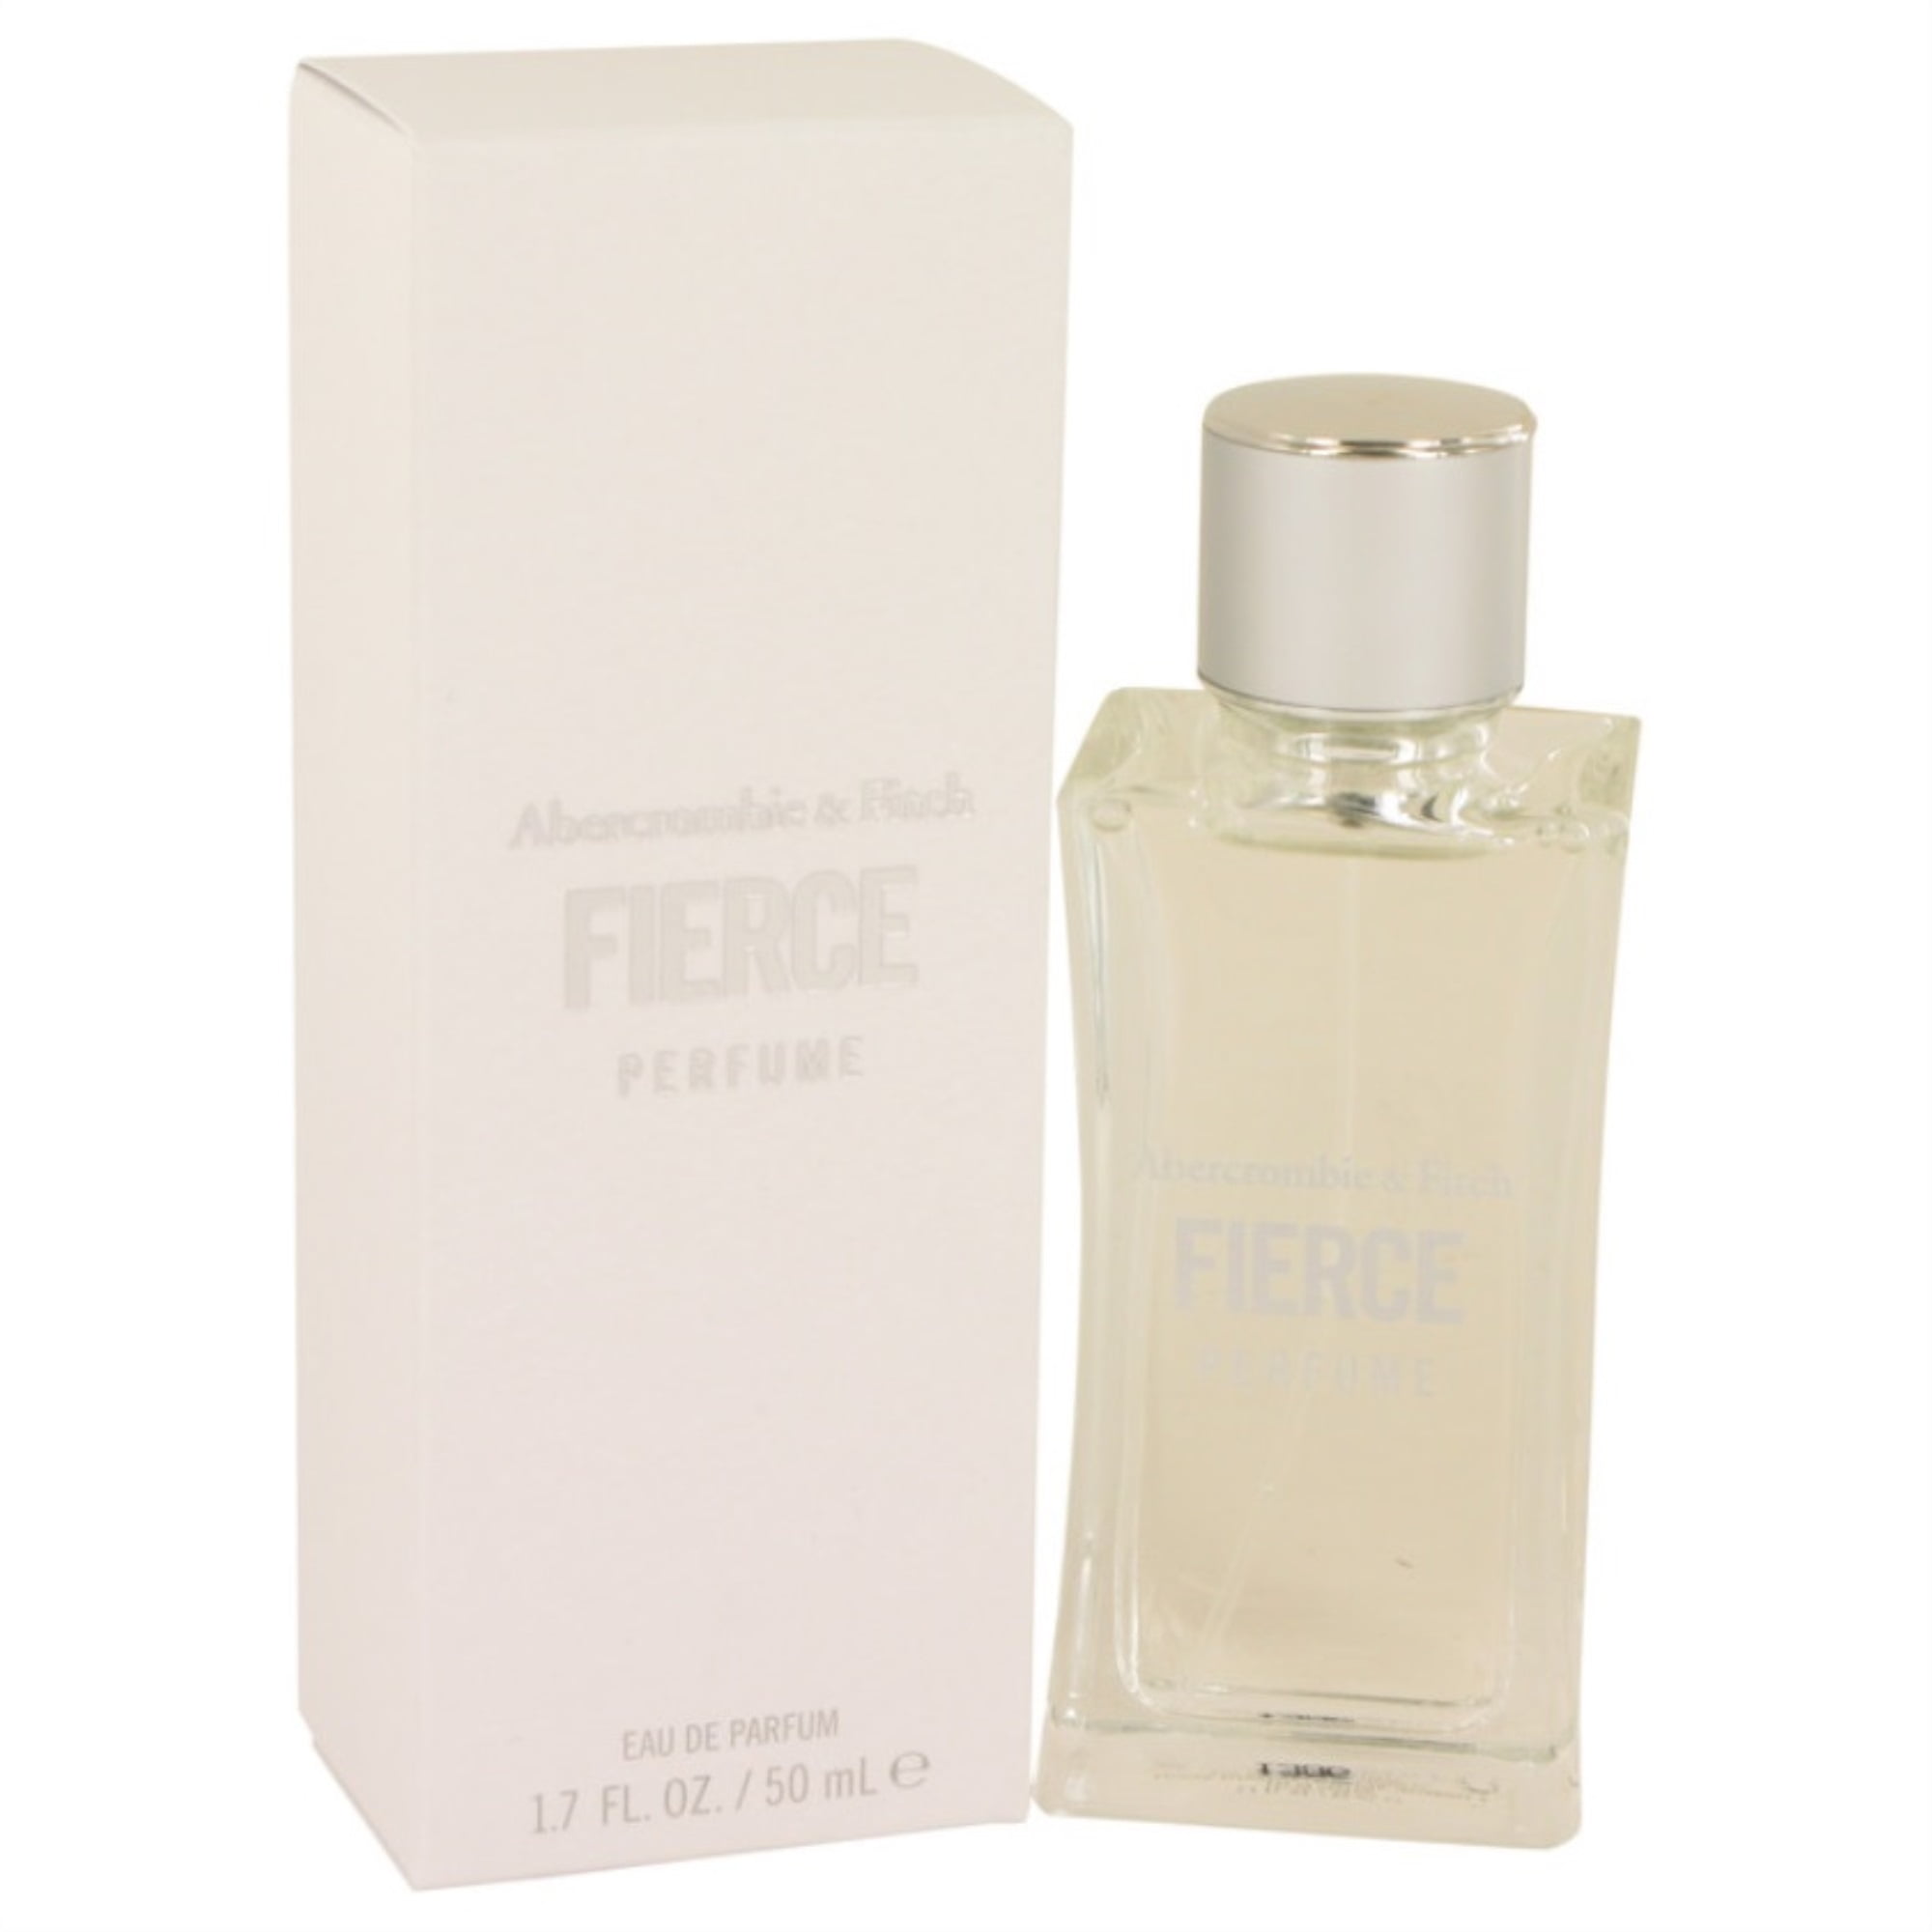 abercrombie & fitch fierce parfüm